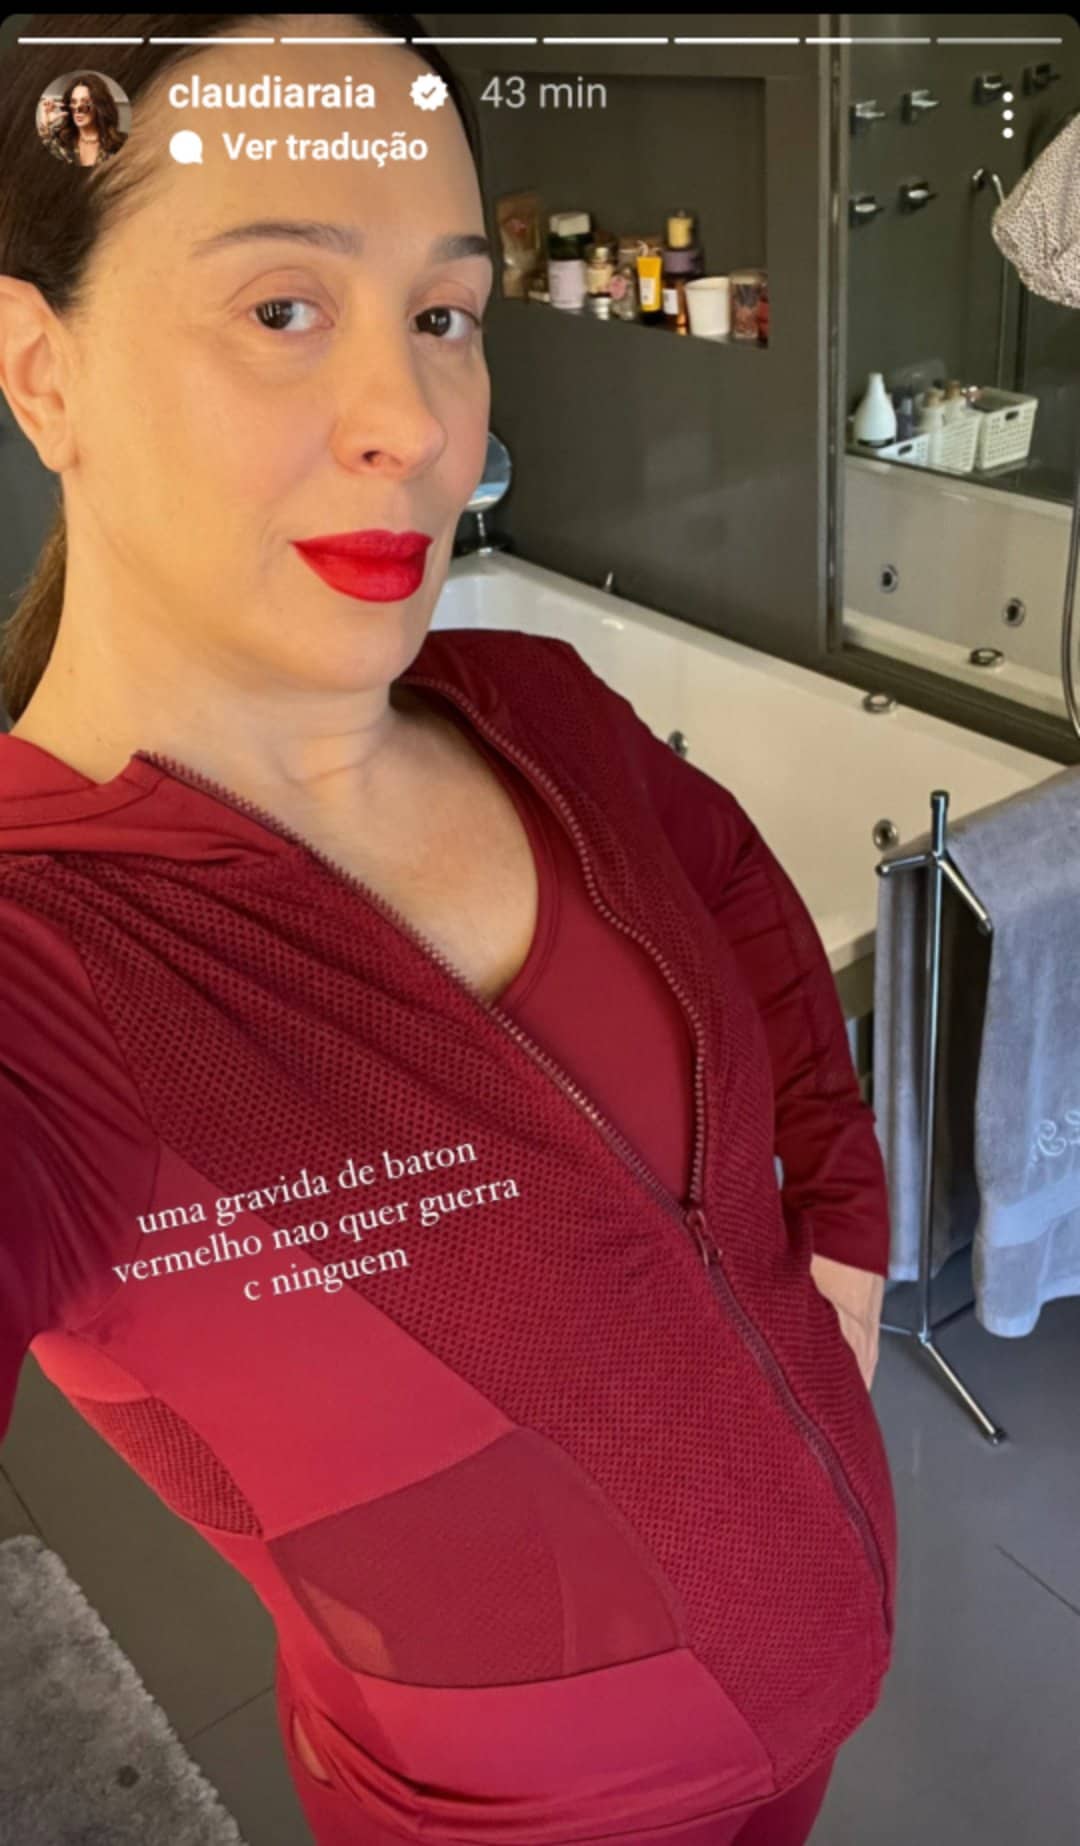 Cláudia Raia grávida. (Reprodução/Instagram)